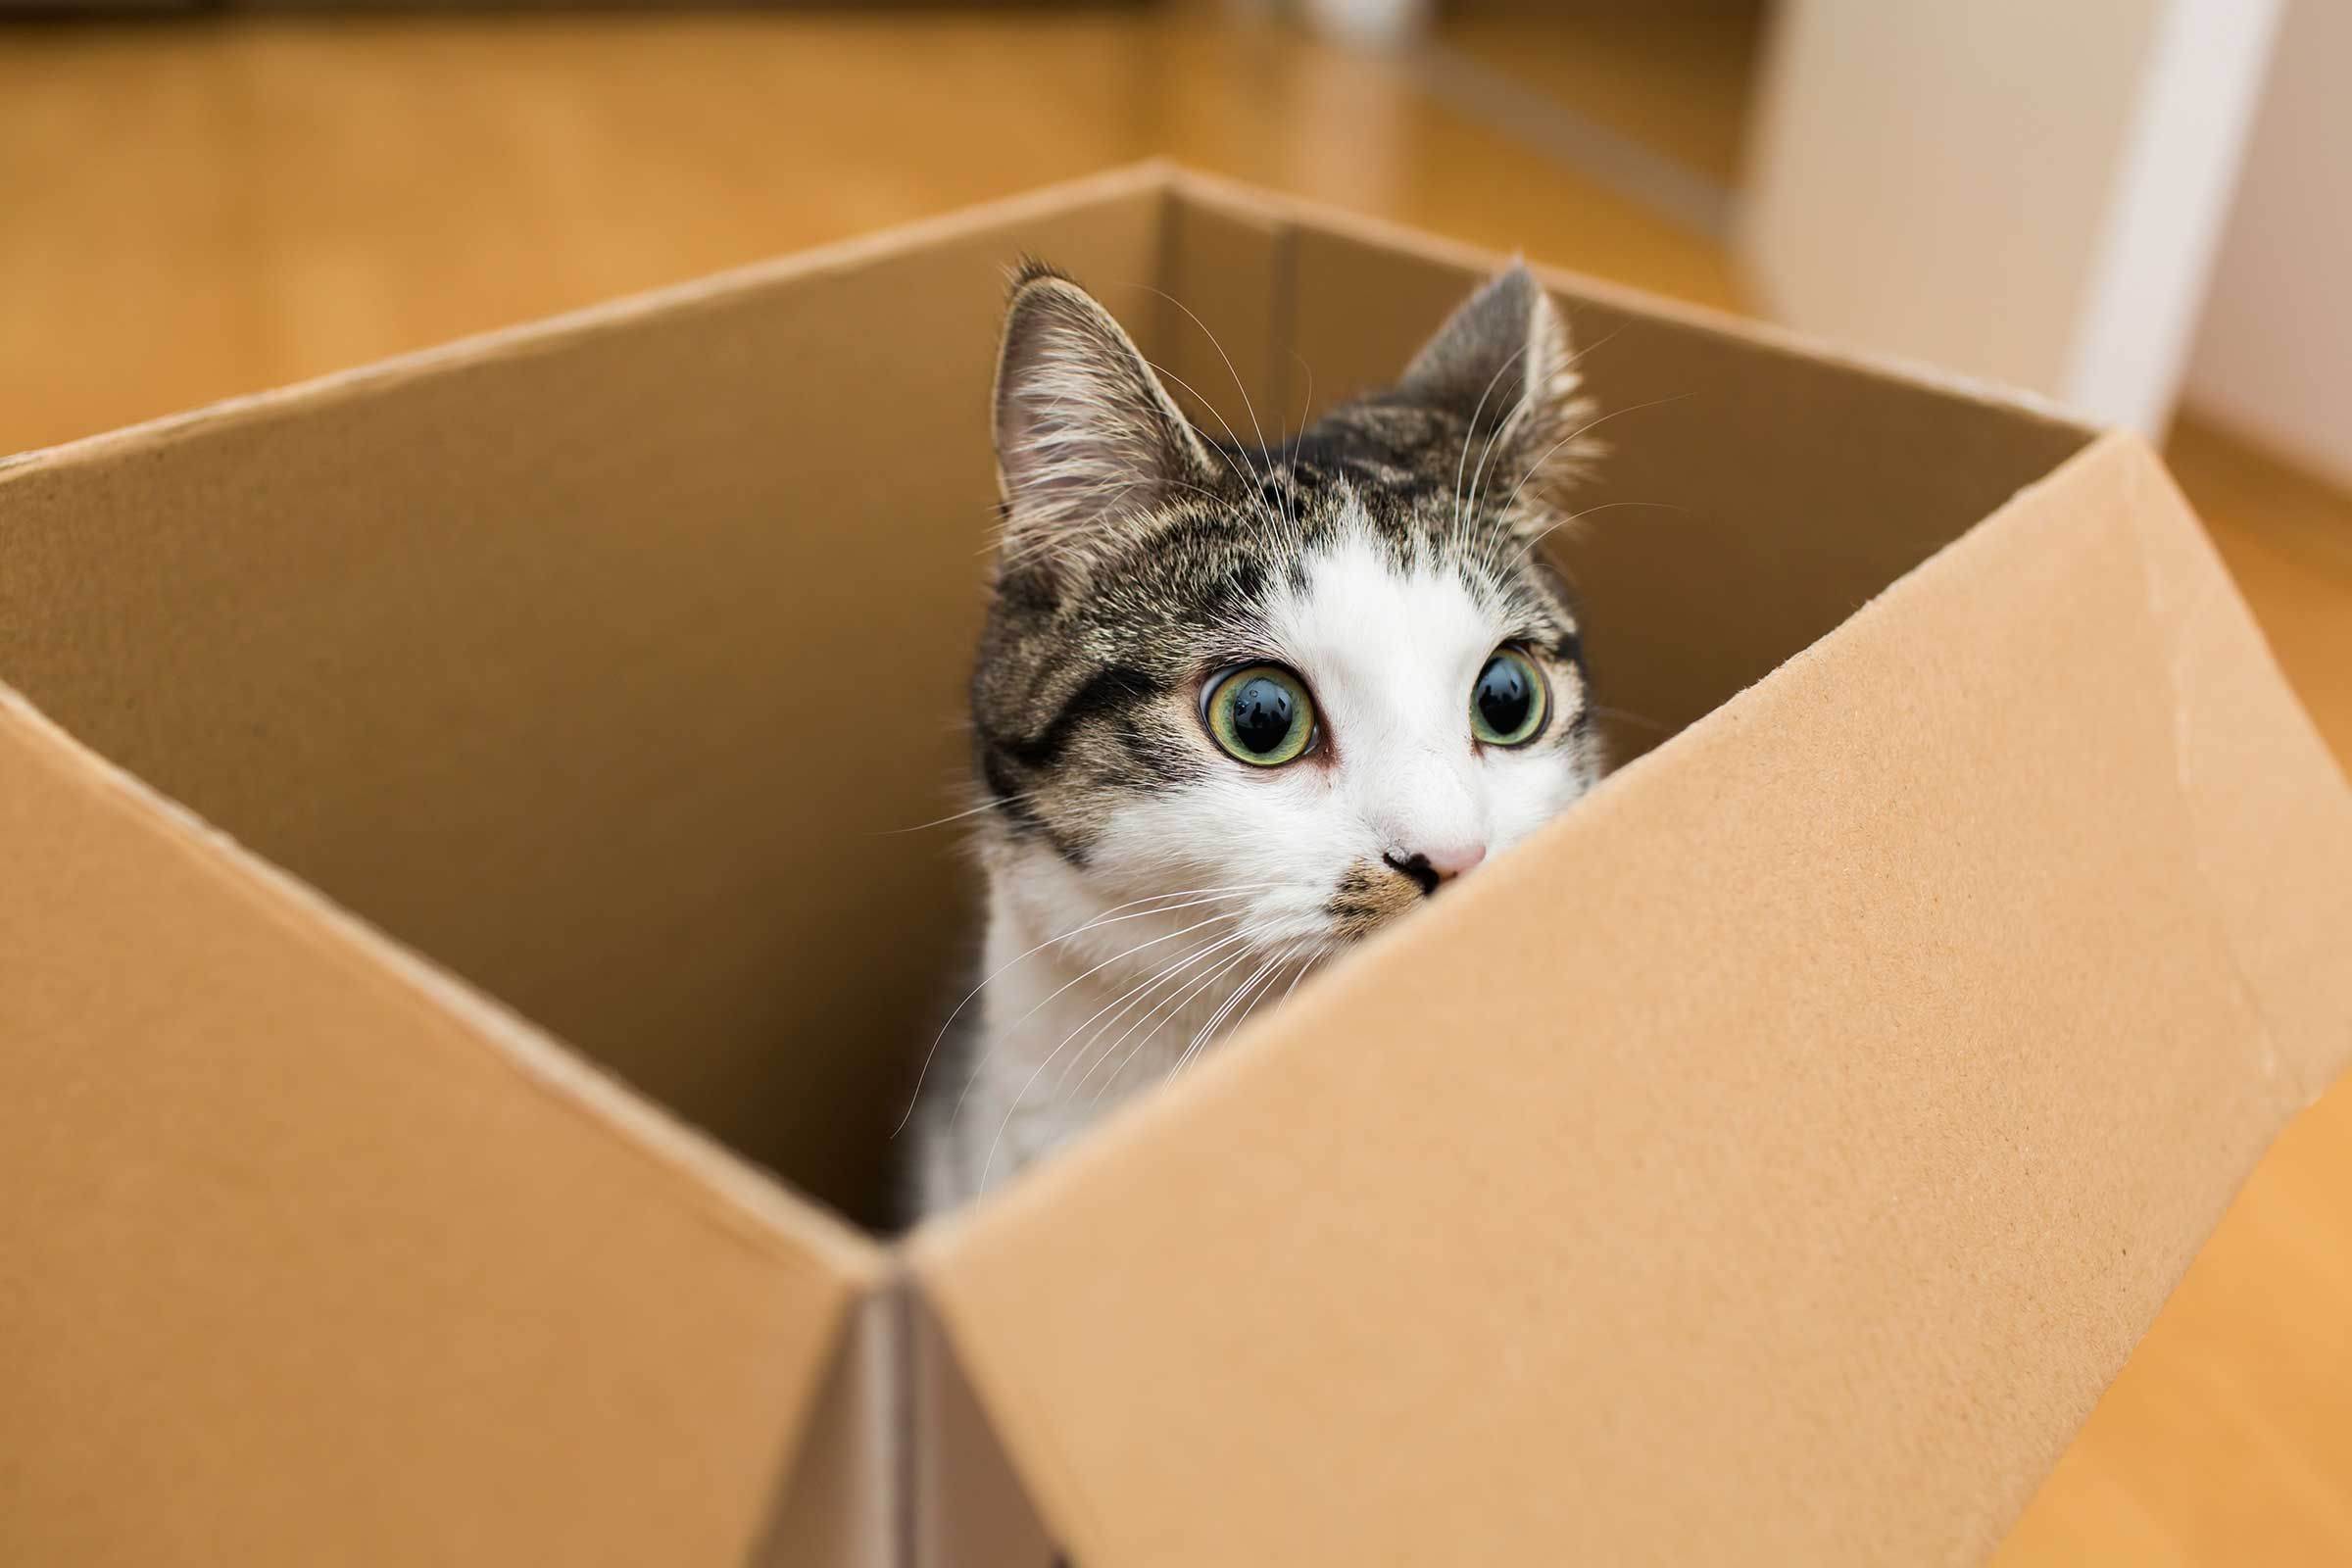 Учёные рассказали, почему коты так сильно любят коробки. ридус